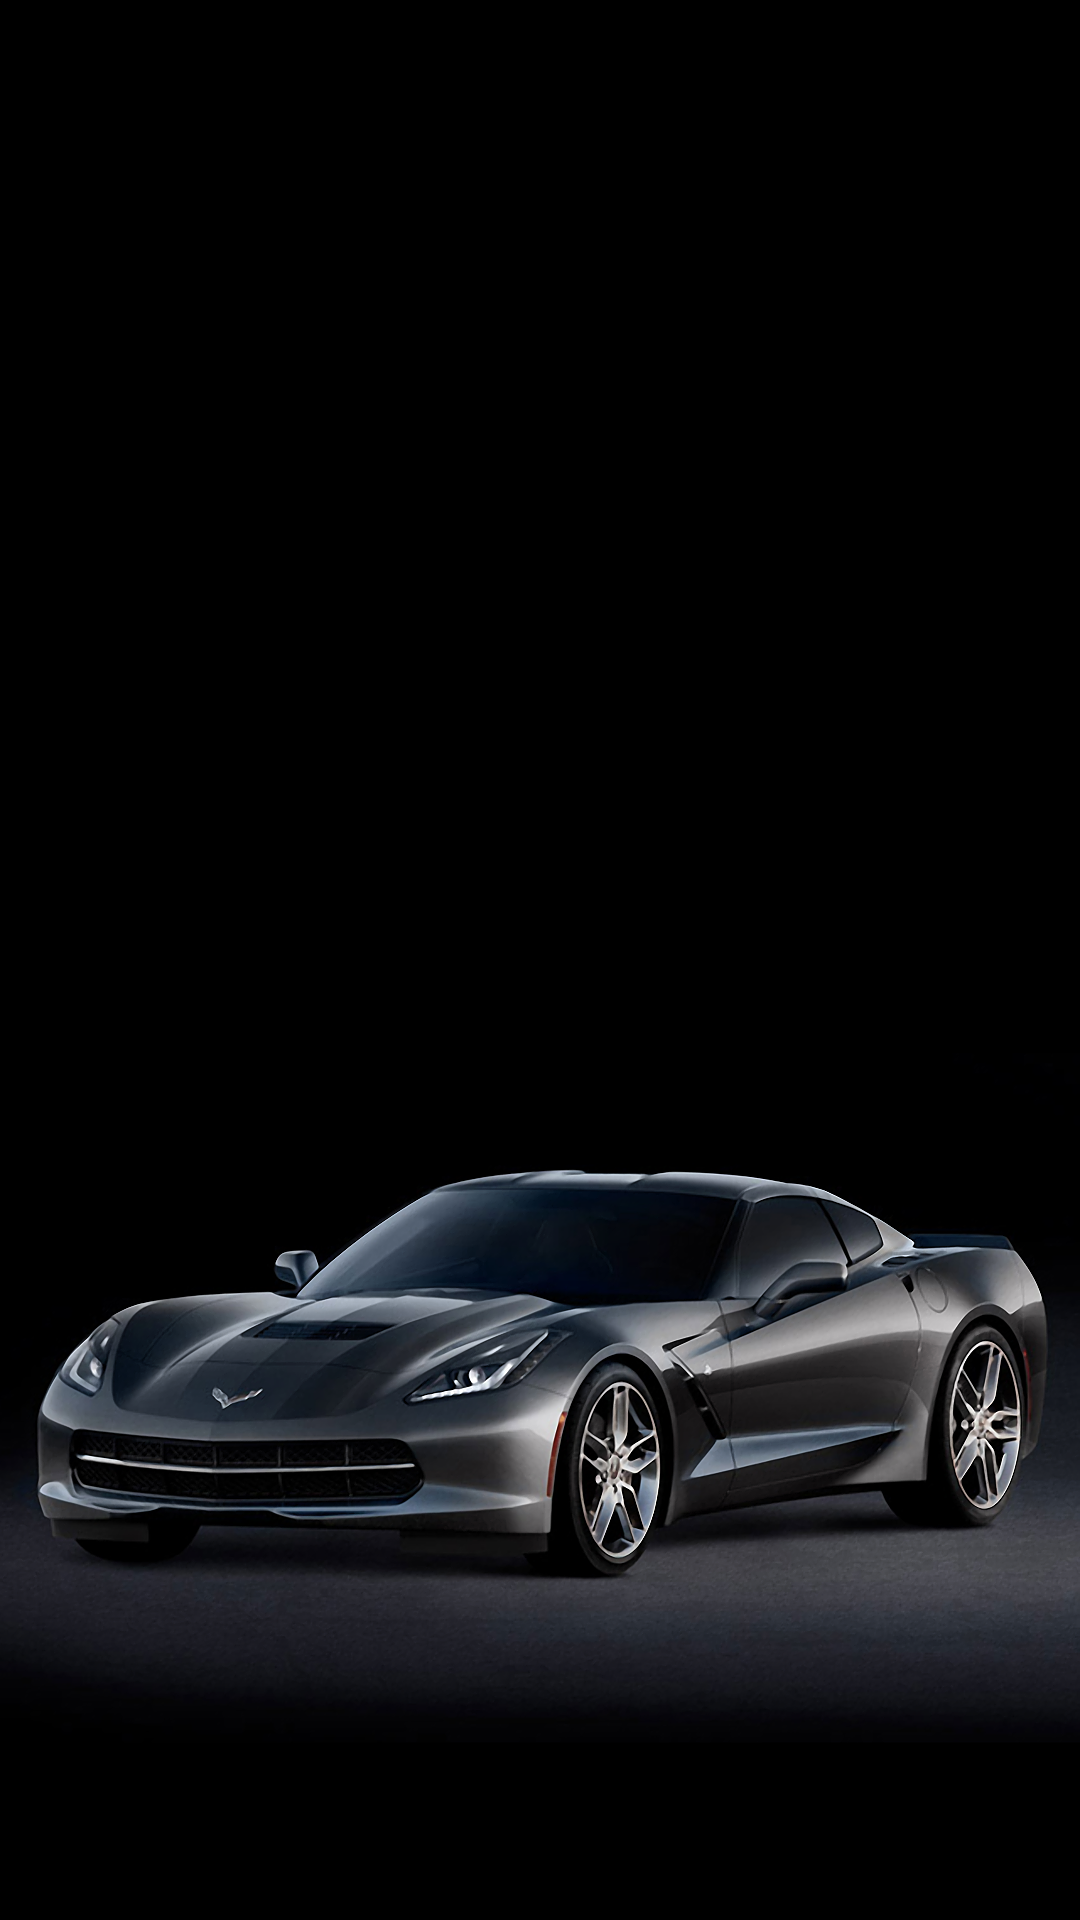 Corvette Stingray (iPhone wallpaper): Nếu bạn yêu thích tốc độ và những chiếc xe sang trọng, thì hình nền Corvette Stingray đầy quyến rũ là sự lựa chọn hoàn hảo cho màn hình iPhone của bạn. Sự thống trị của màu đỏ và động cơ mạnh mẽ của xe này nhất định sẽ khiến bạn cảm thấy hào hứng và tiếp thêm sức mạnh.